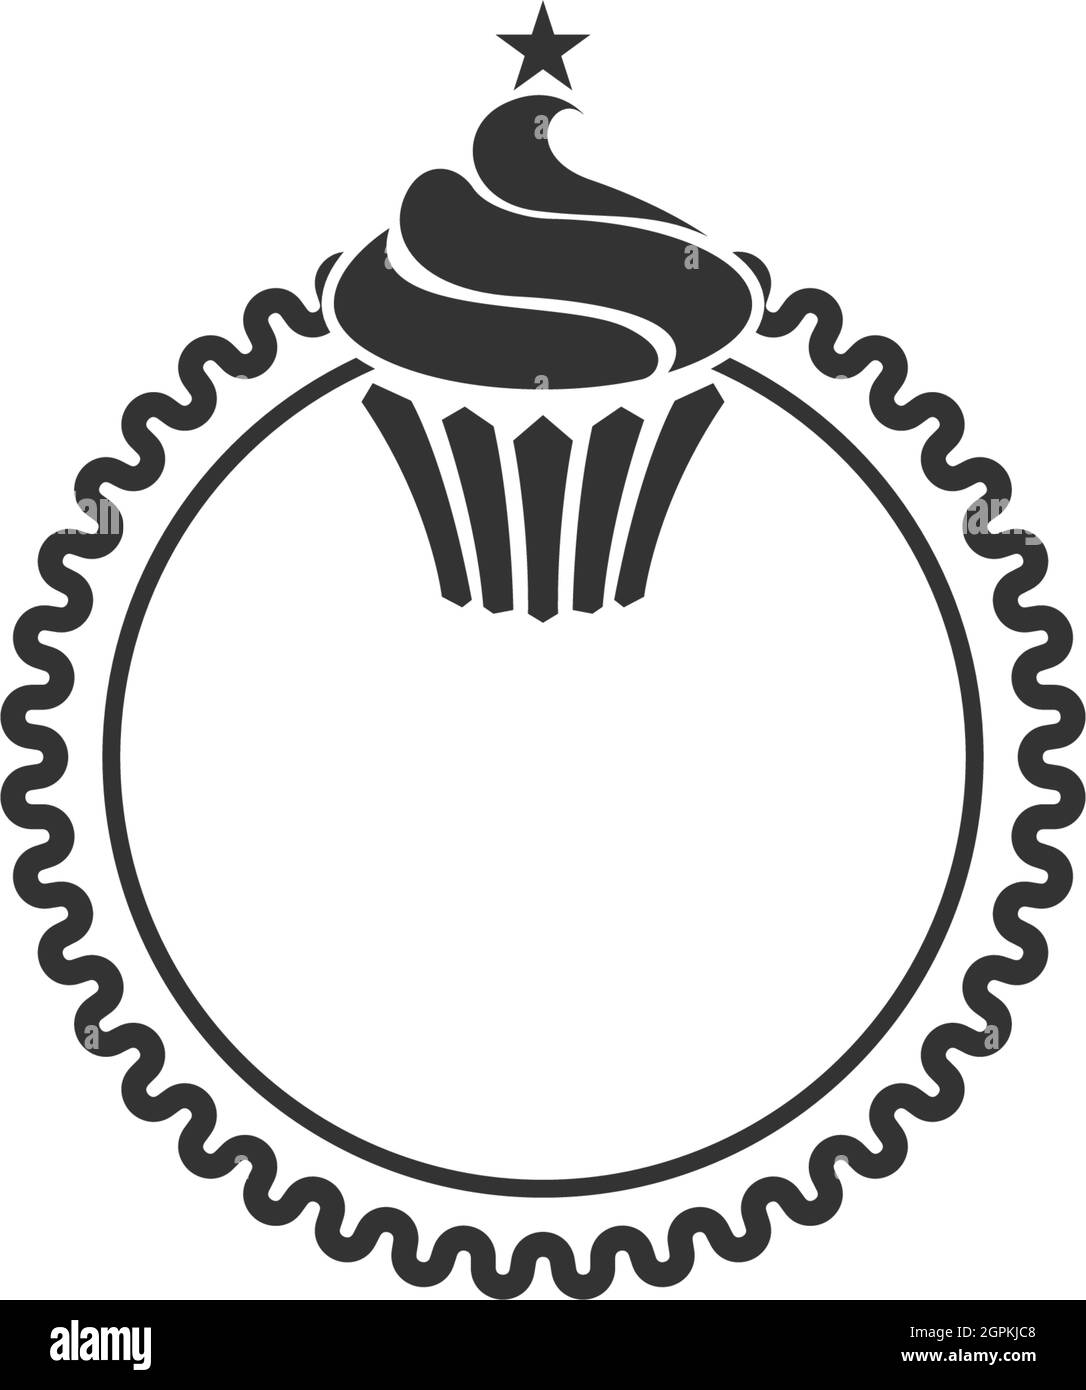 Cake Shop Branding: Guide to Design Delicious Cake Logos